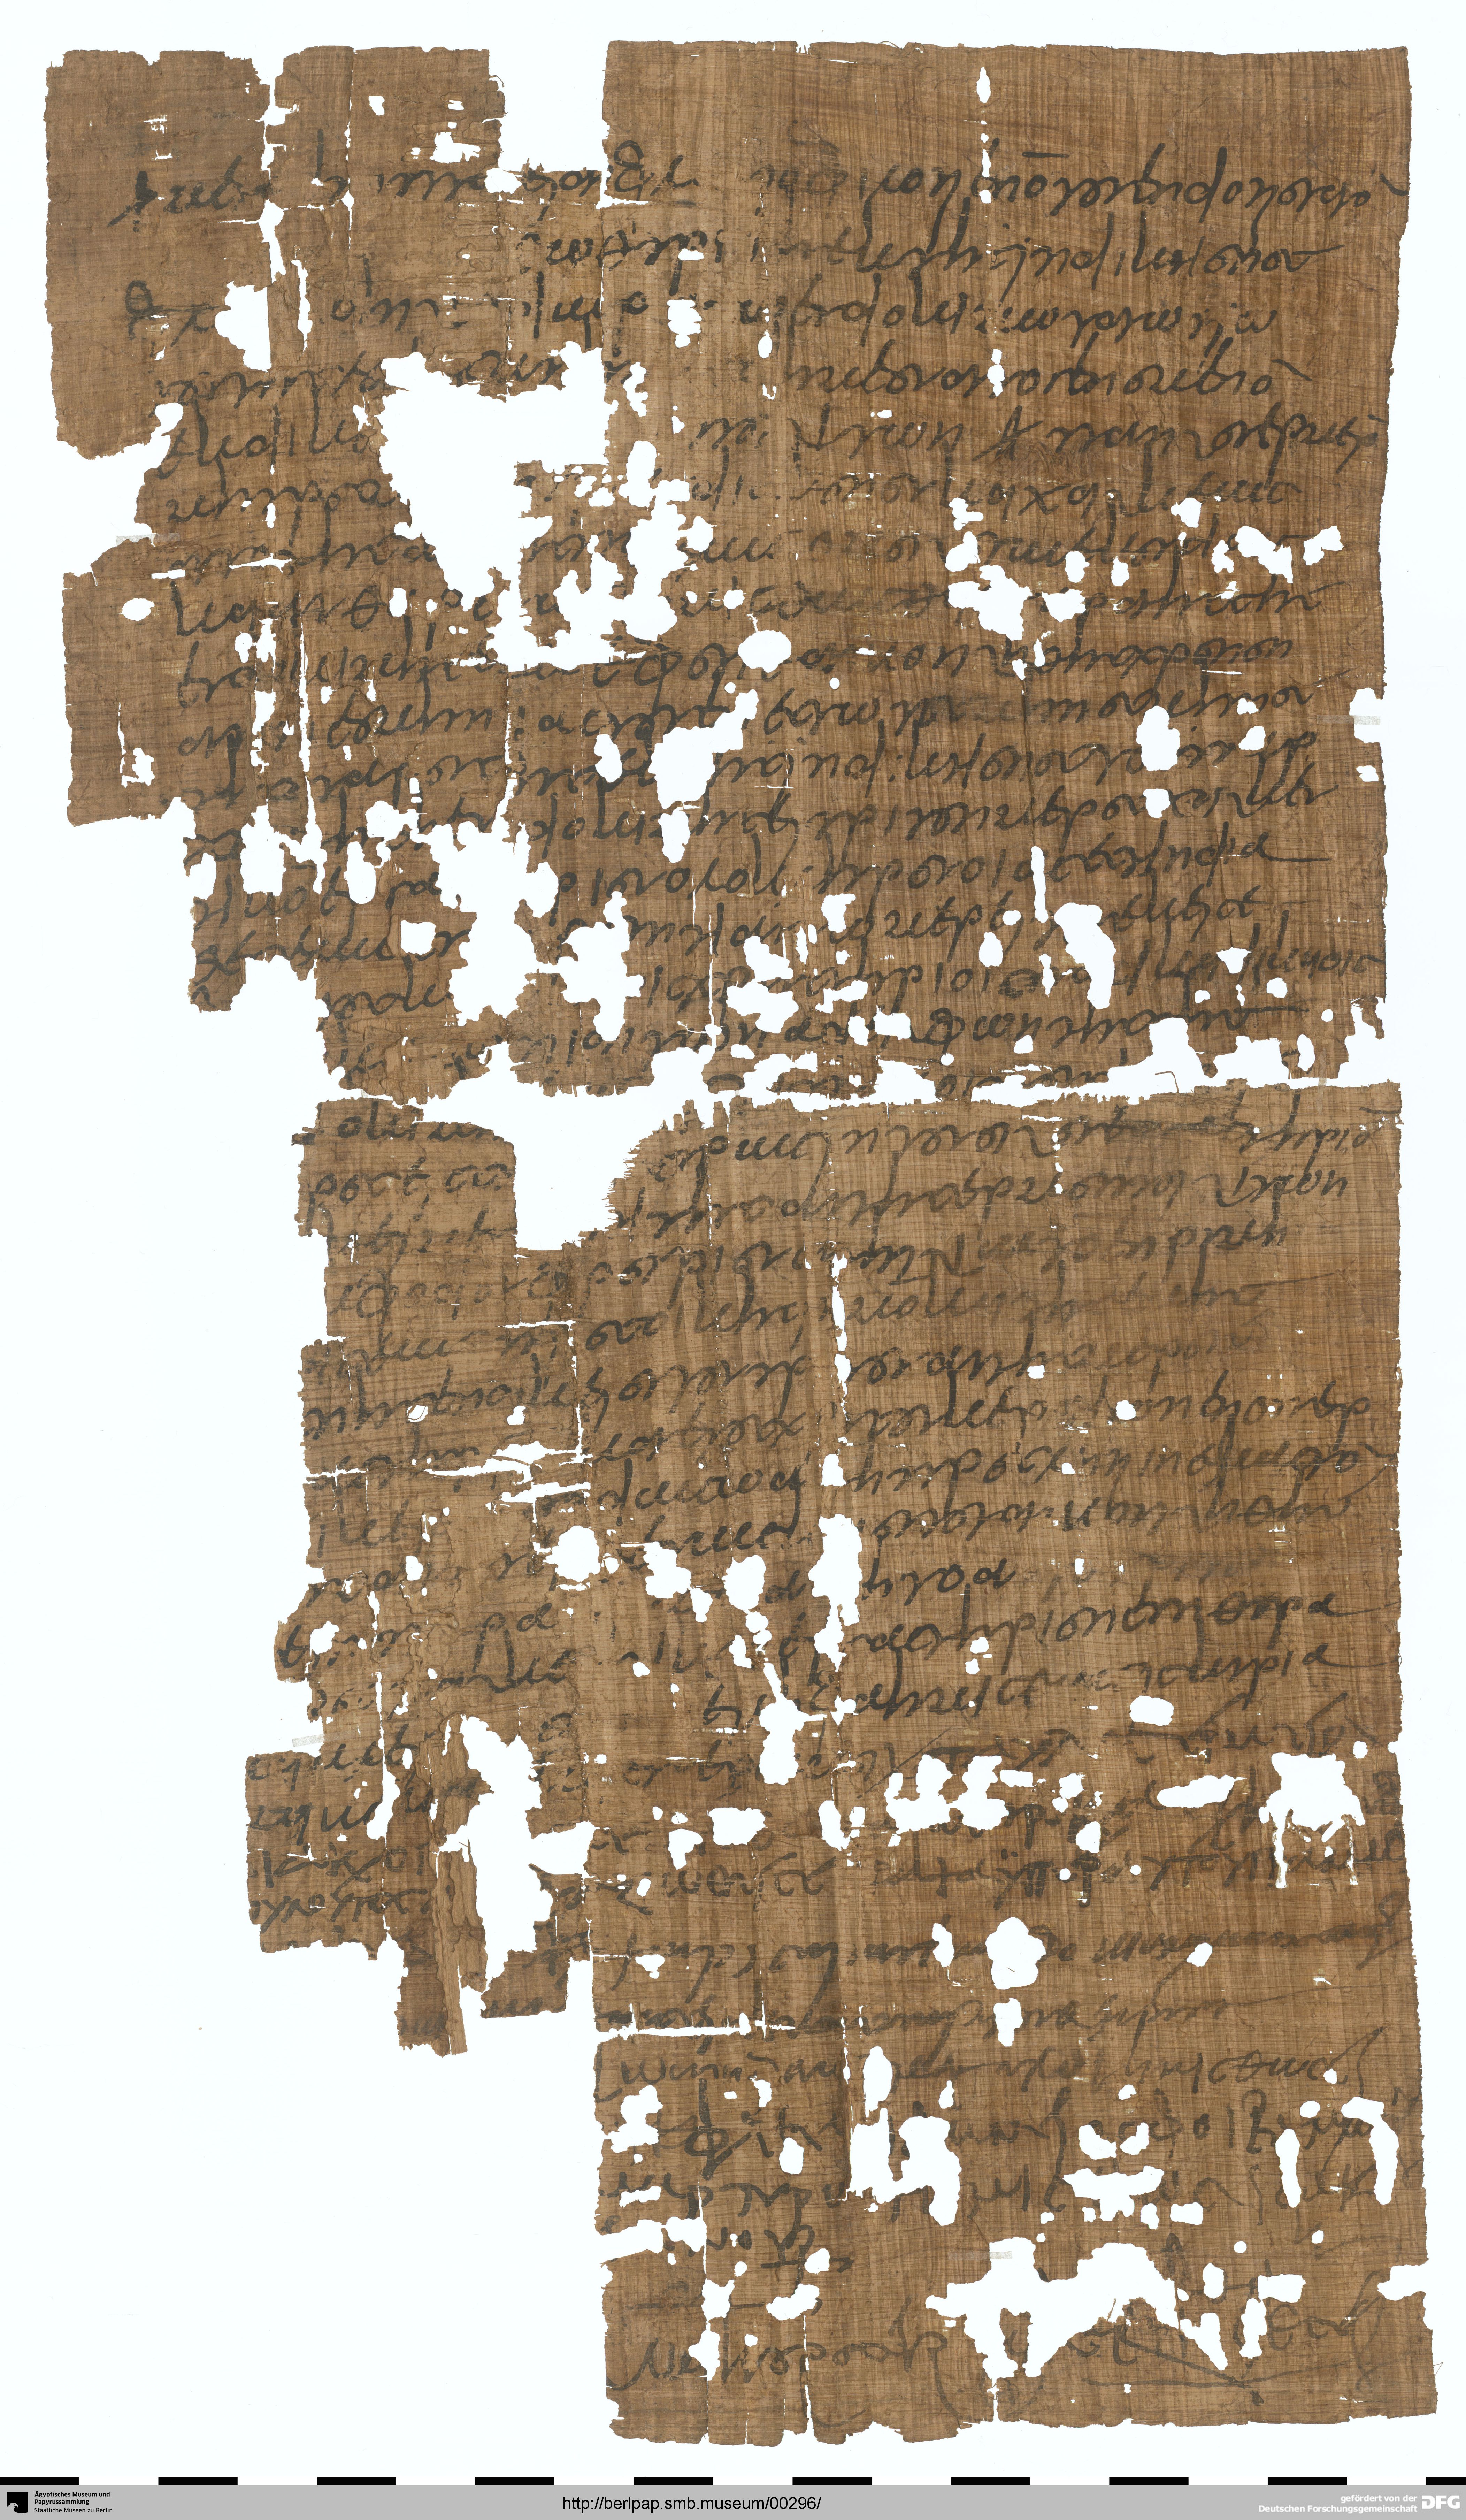 http://berlpap.smb.museum/Original/P_25401_R_001.jpg (Ägyptisches Museum und Papyrussammlung, Staatliche Museen zu Berlin CC BY-NC-SA)